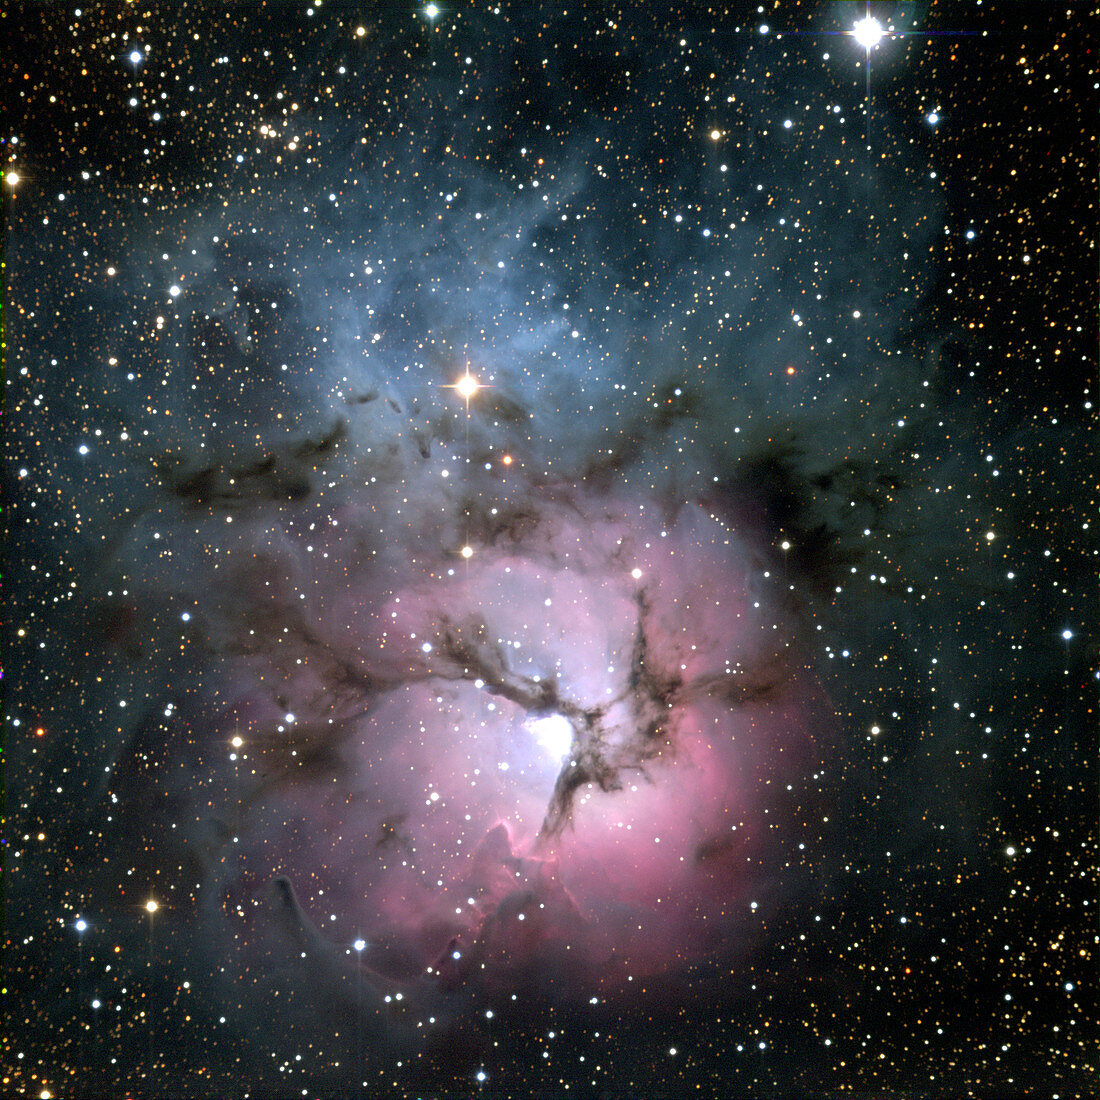 Trifid nebula (M20